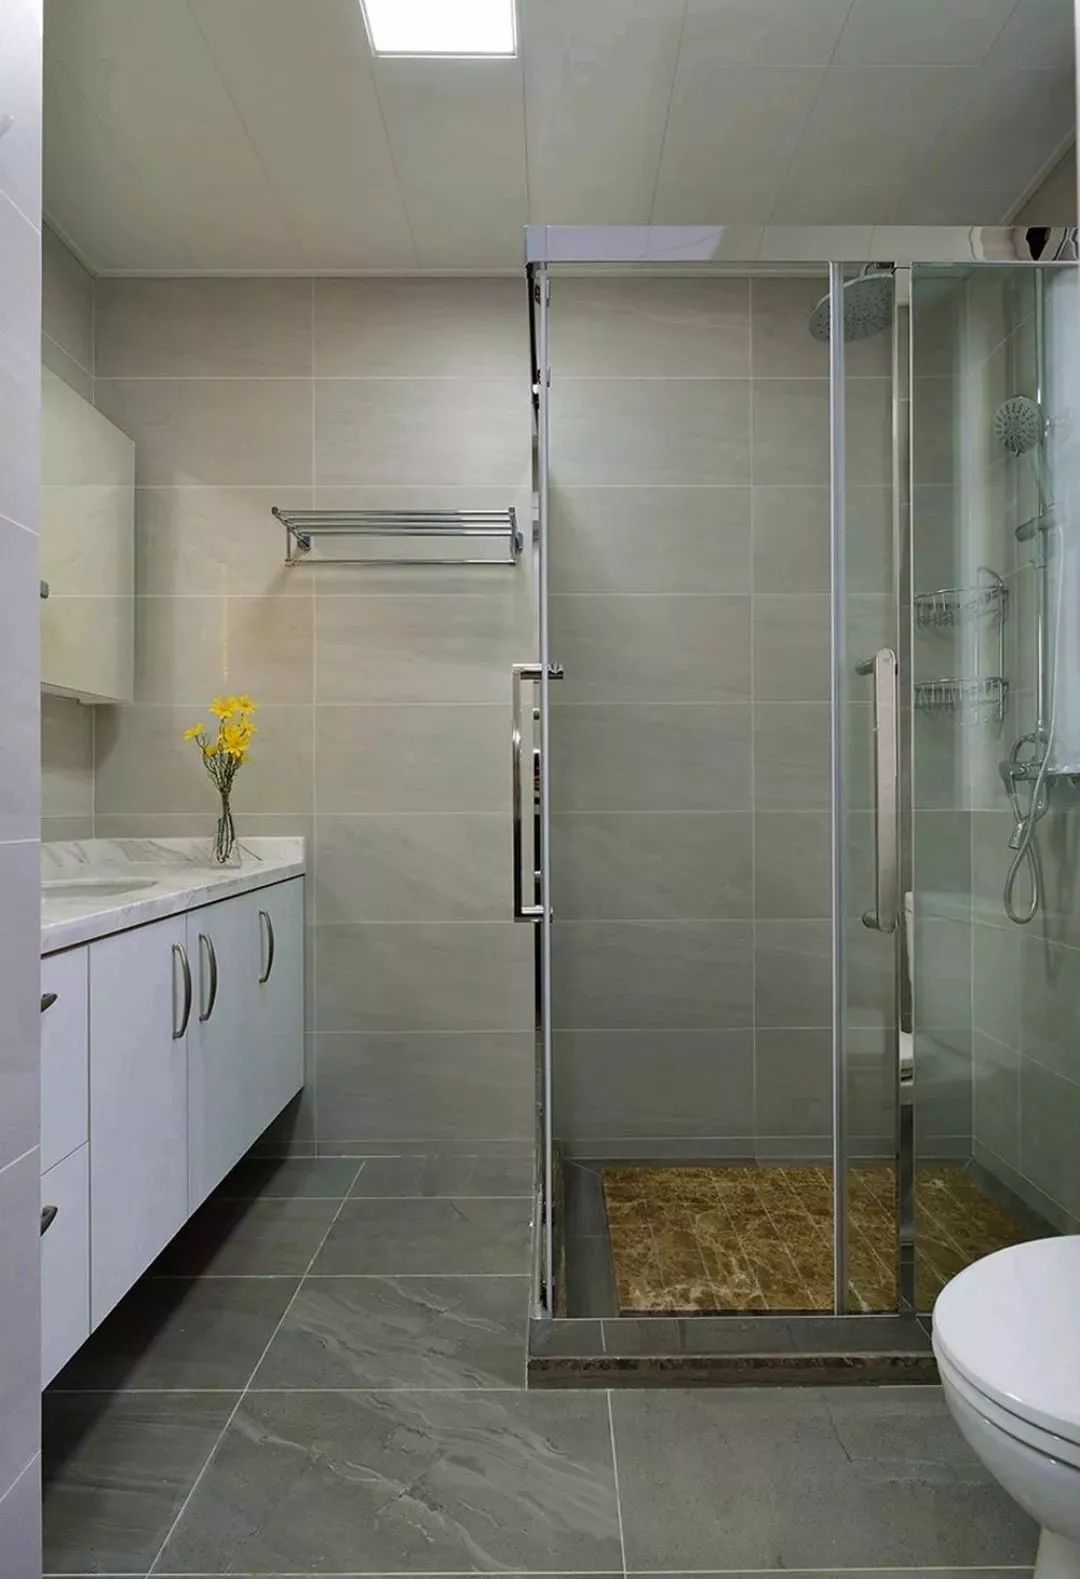 他家用砖砌了一个大浴缸，还能兼做淋浴房，省钱又省空间 - 知乎